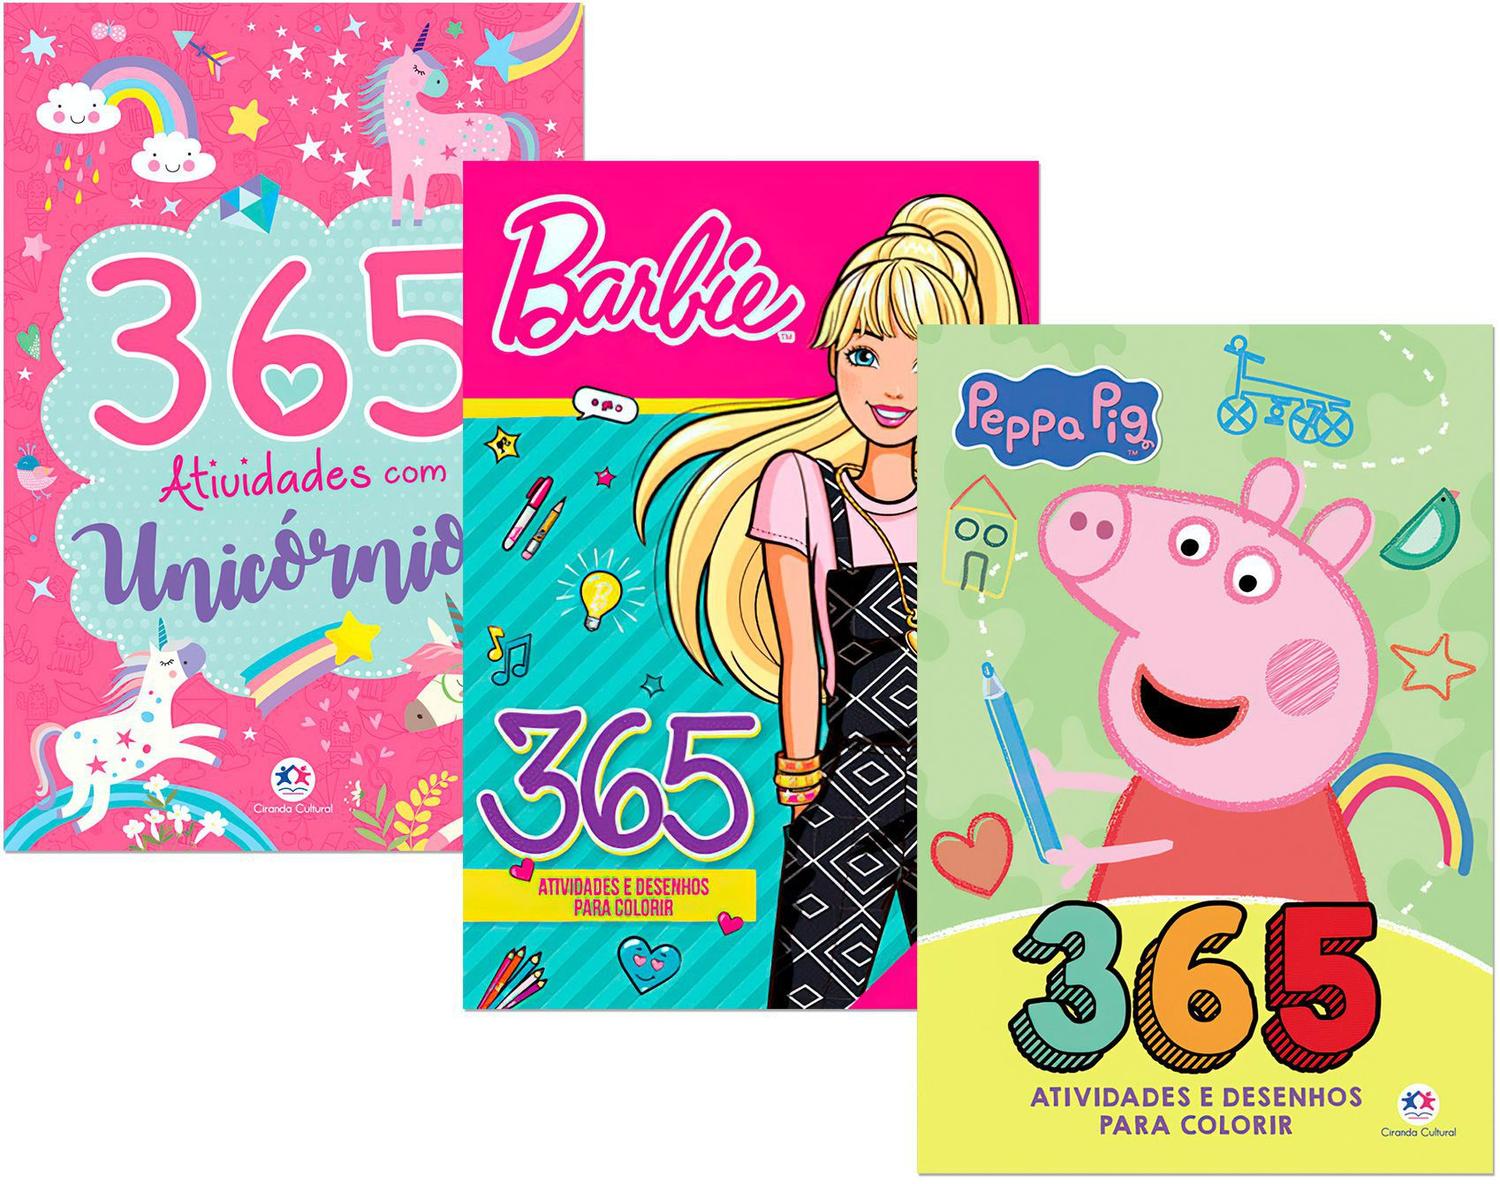 365 Atividades e Desenhos para colorir - Peppa Pig